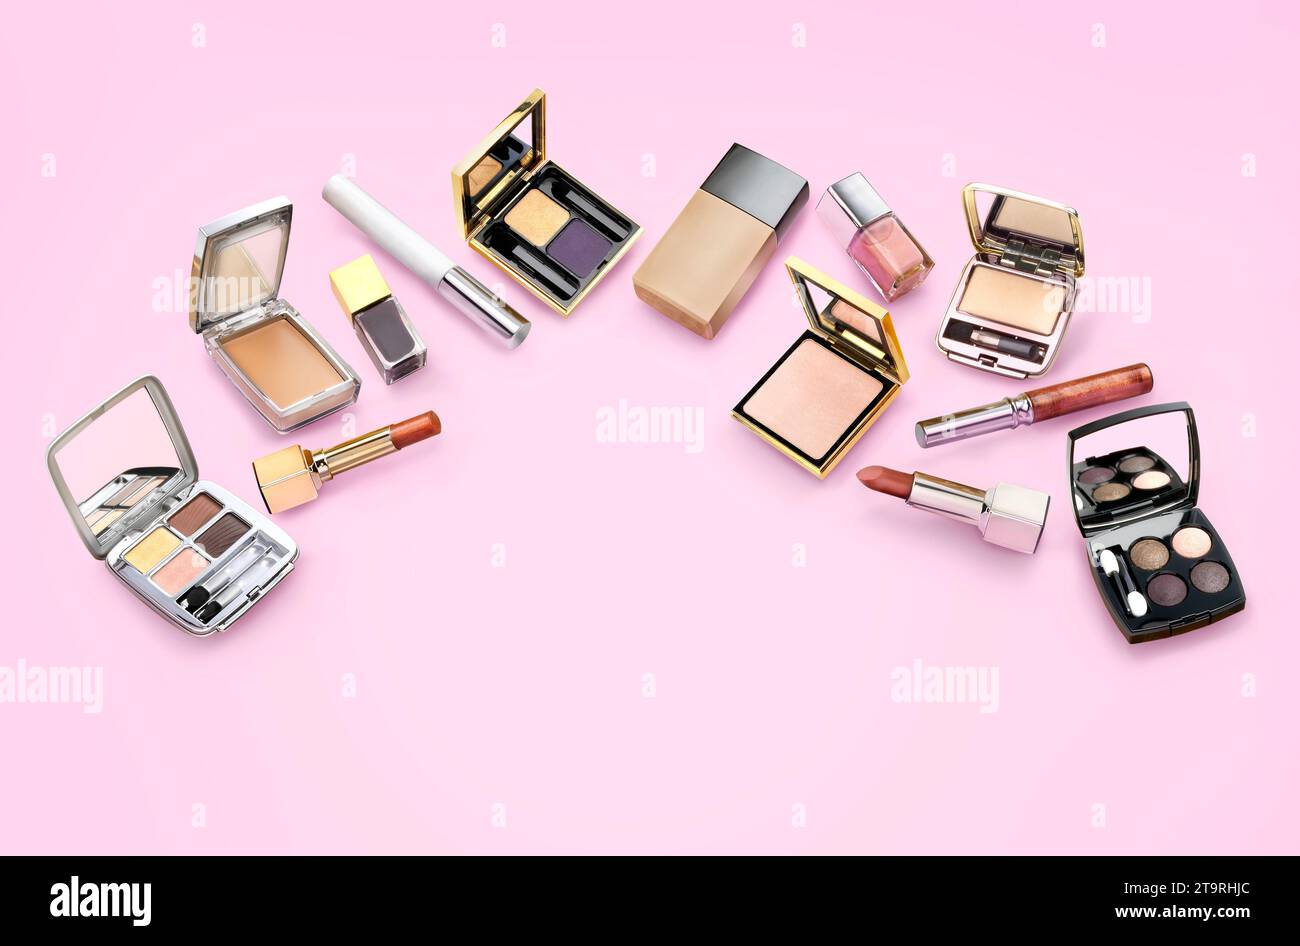 Unterschiedliche Arten von Make-up-Einstellungen vor rosafarbenem Hintergrund. Lippenstift, nagellack, Lidschatten, Gesichtspuder. Stockfoto